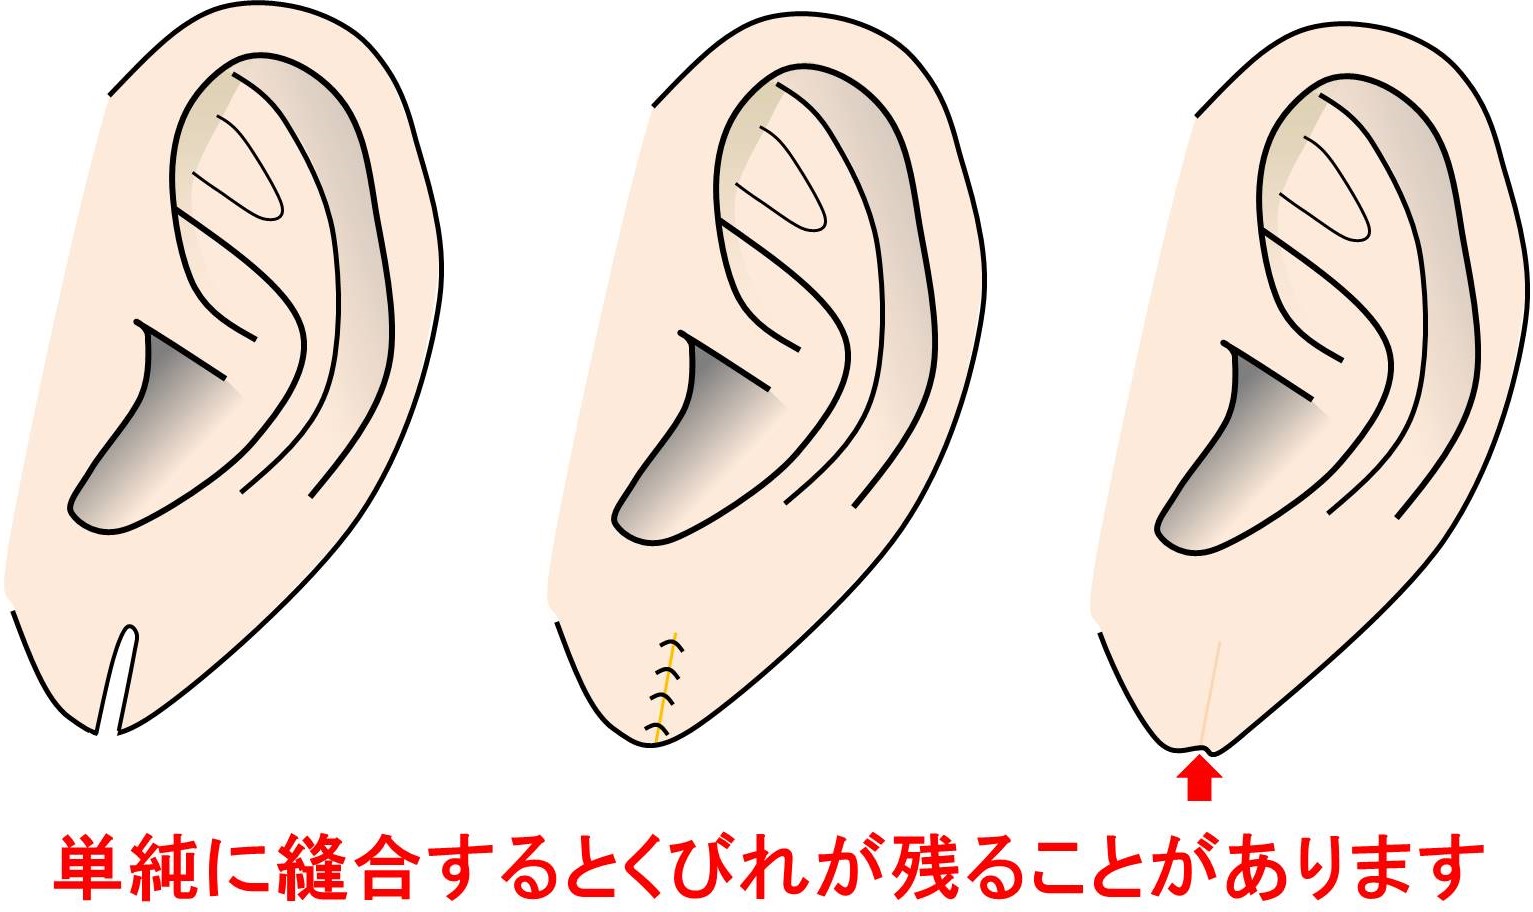 耳垂裂（じすいれつ） 2カ所以上切れていても治療可能です | 神楽坂肌と爪のクリニック